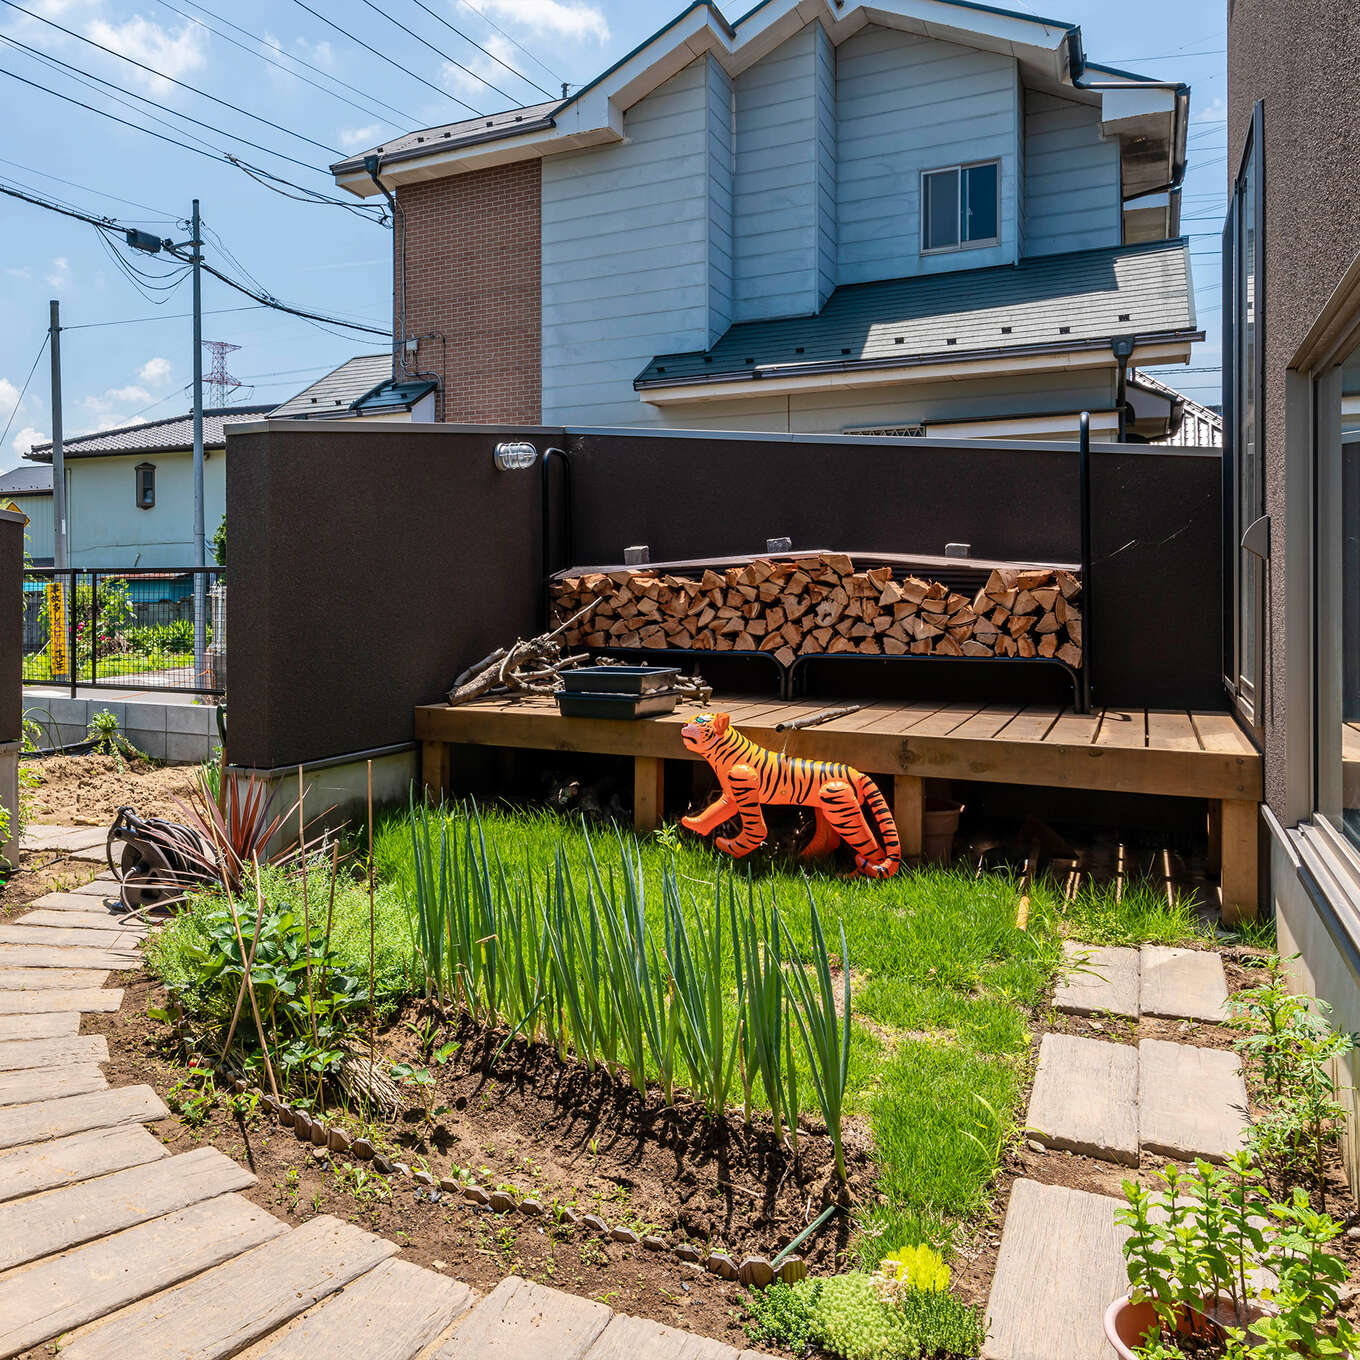 R+houseの物件の庭の写真です。奥にウッドデッキがあり、ストーブに使う薪が並んでいます。塀があるので外からは見えにくい。弧を描く園路の脇にネギなど野菜が植わっている